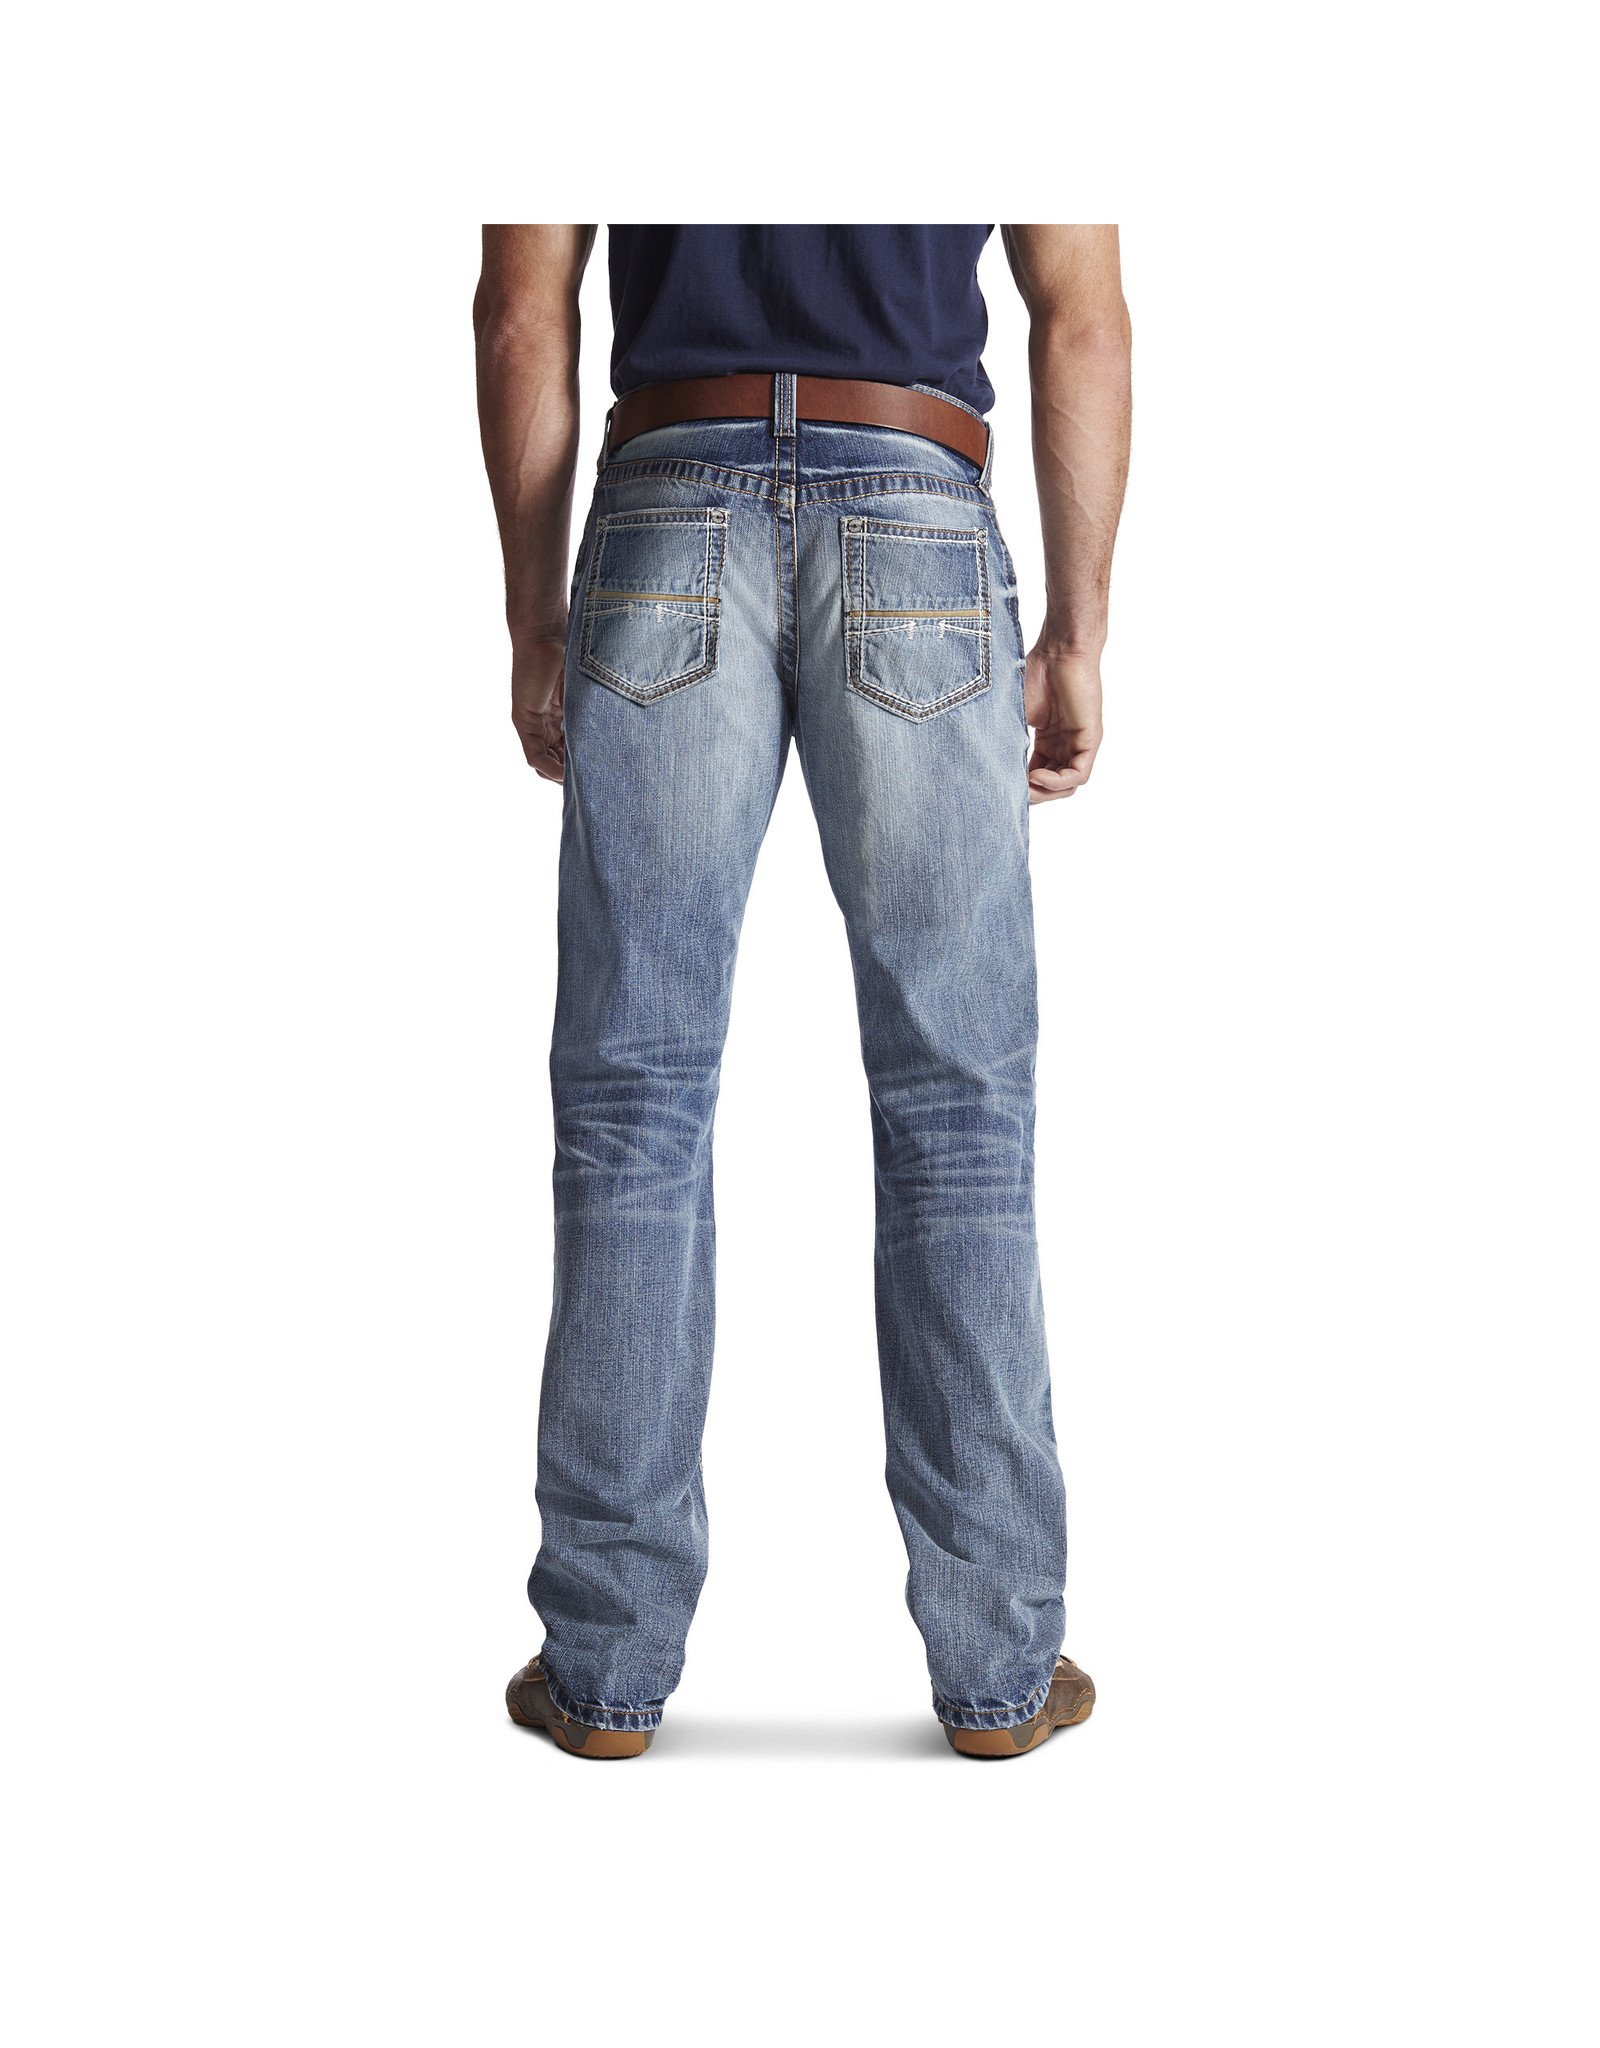 Ariat Mens Durango Jeans M4 10017511